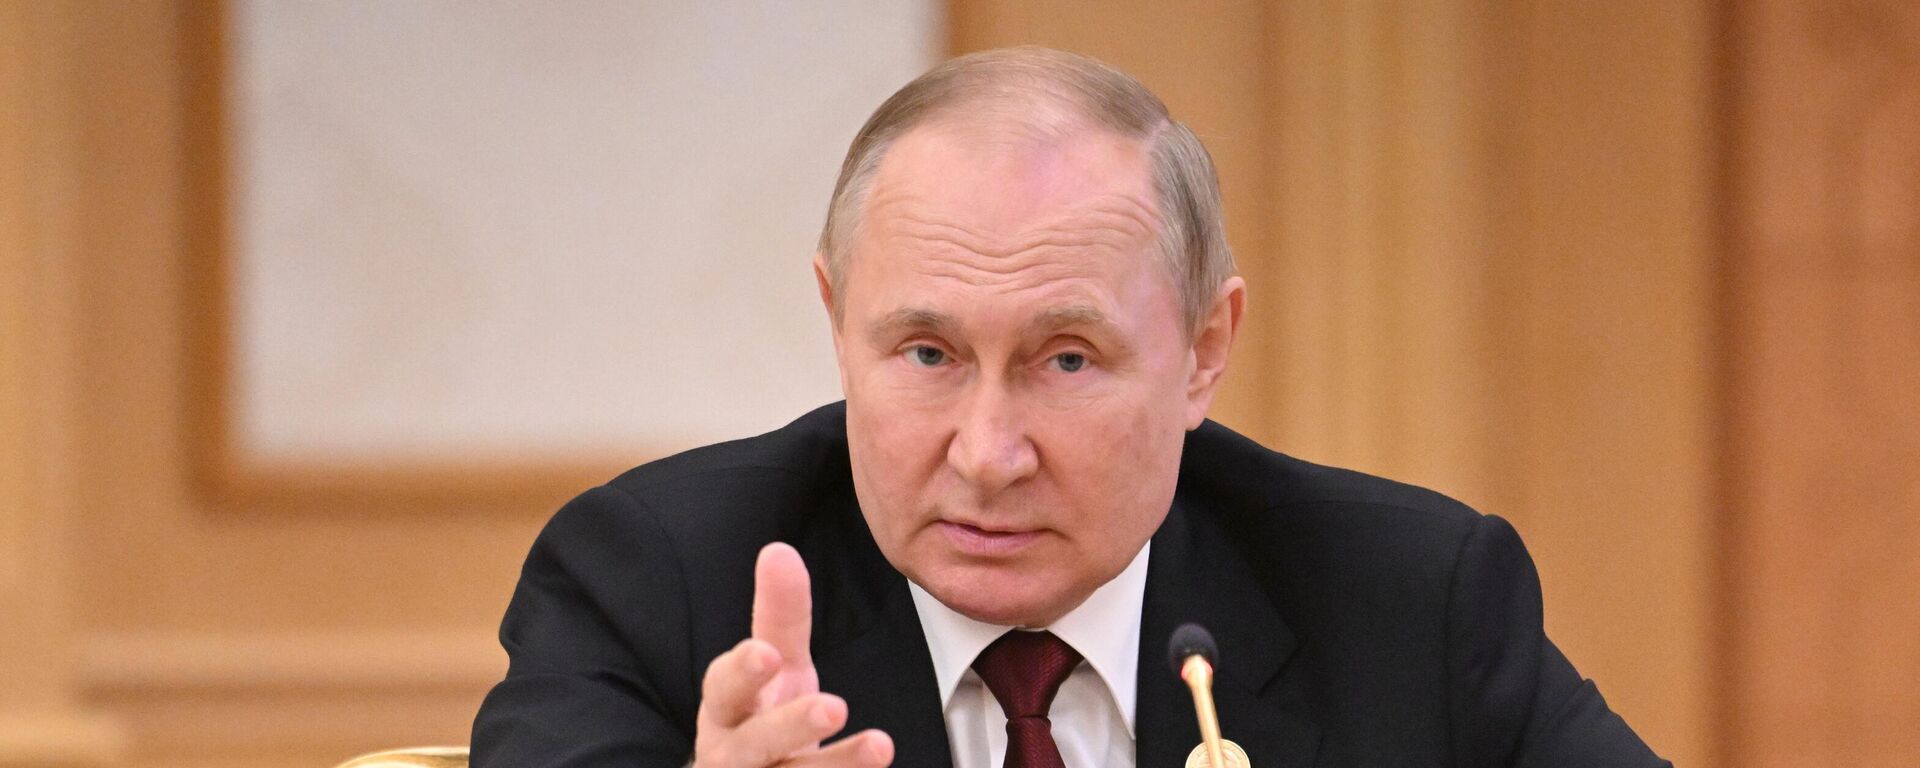 Vladímir Putin, el presidente ruso al participa en la VI Cumbre del mar Caspio - Sputnik Mundo, 1920, 23.09.2022